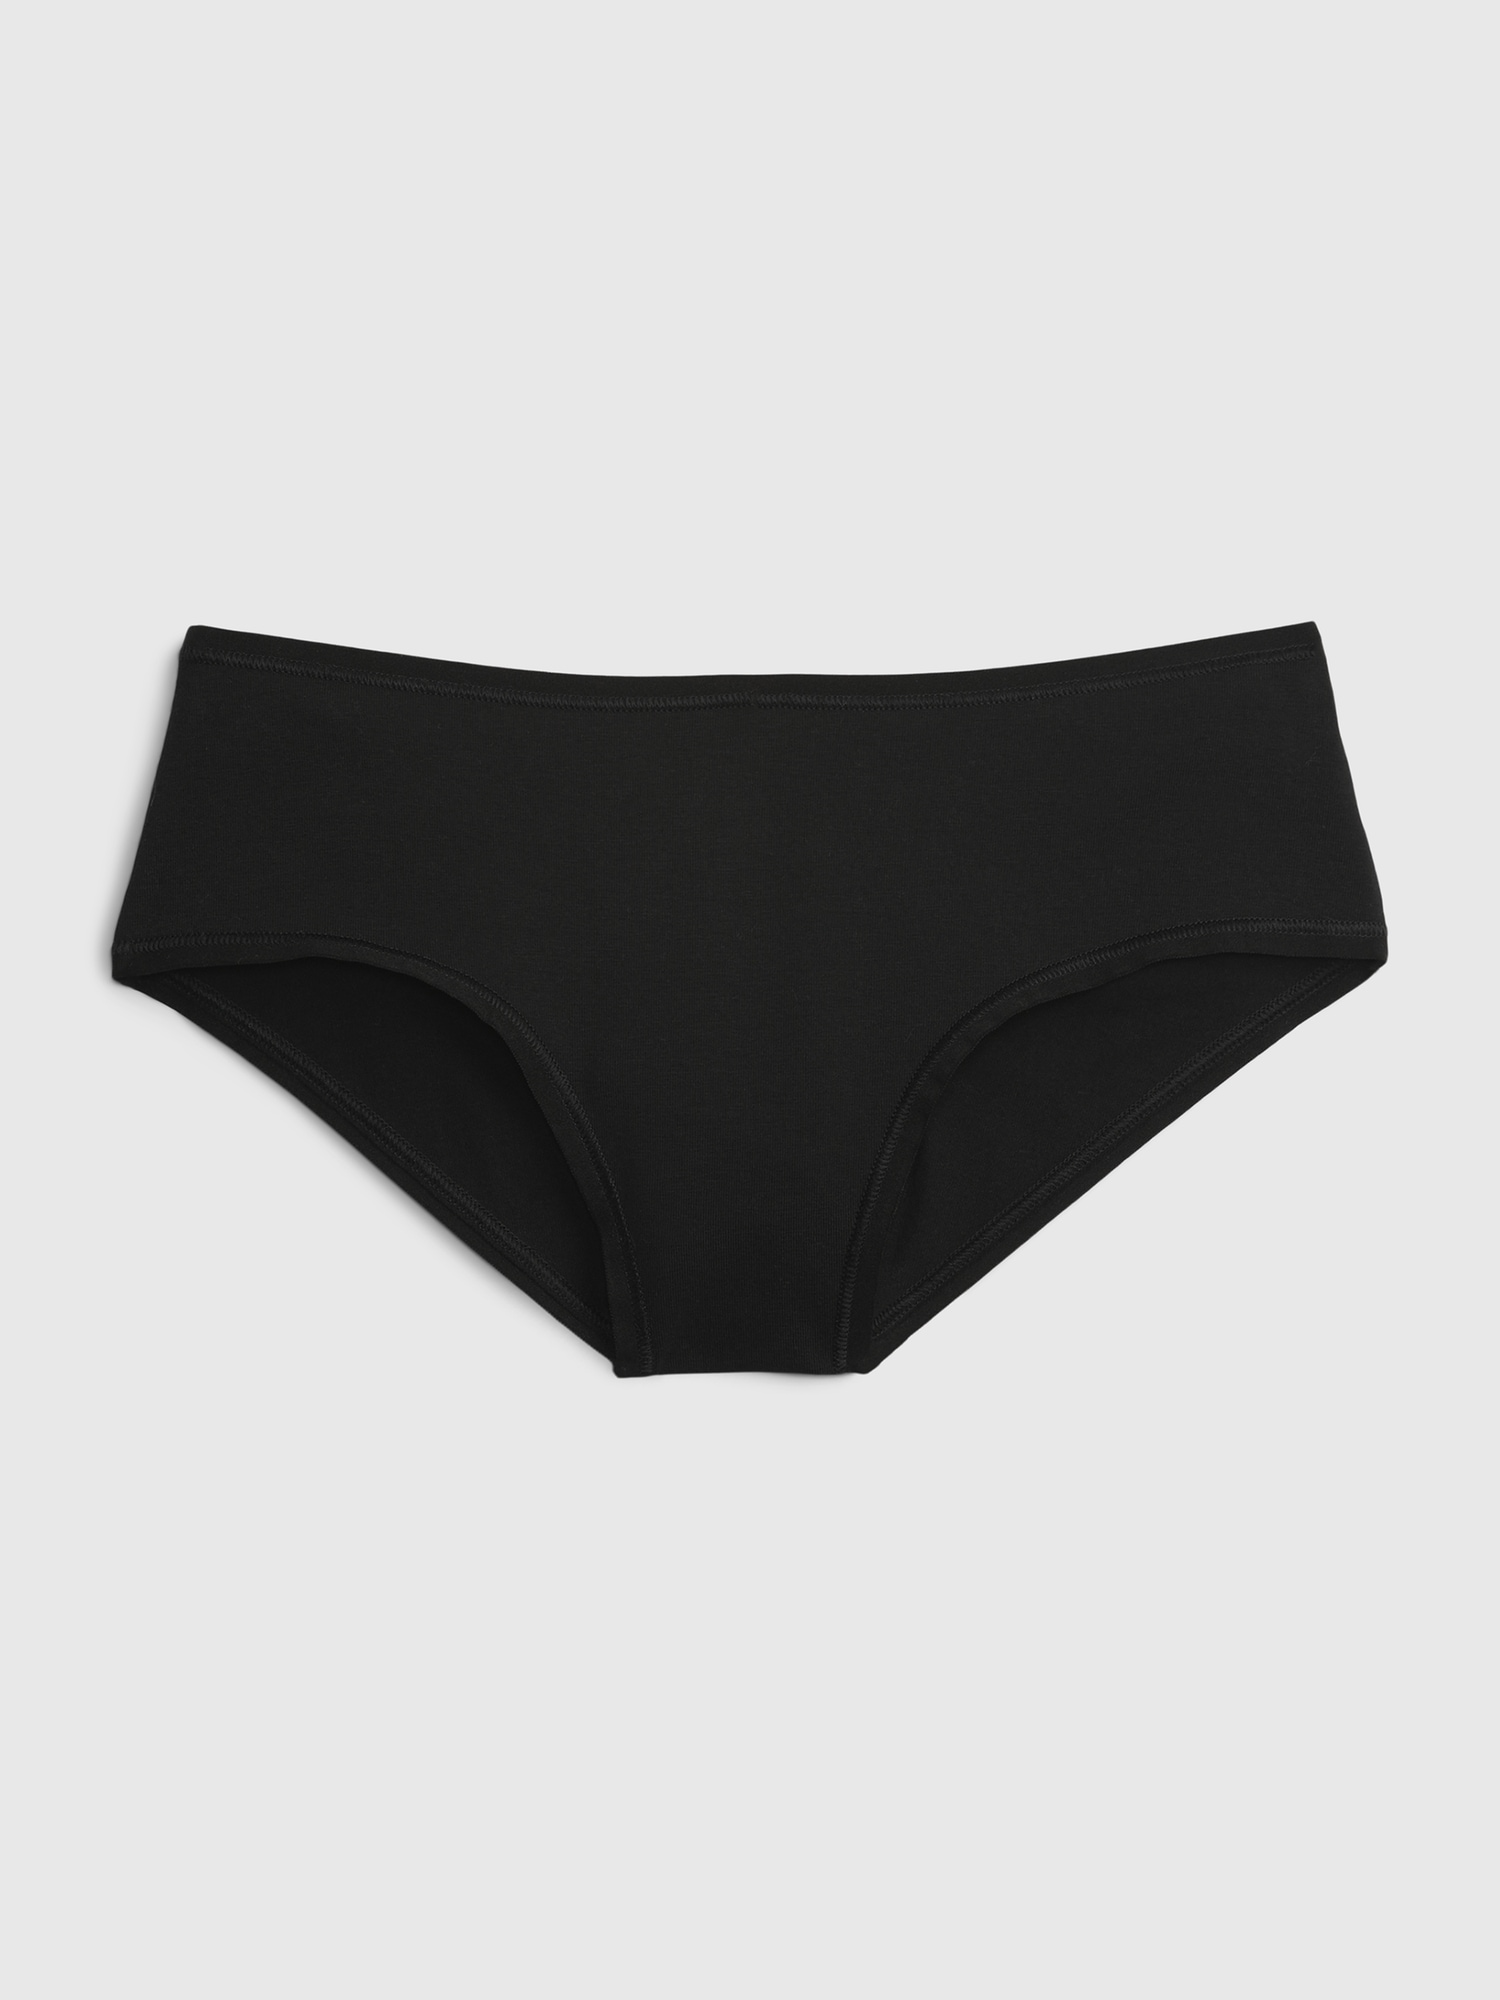 Women's Cotton Stretch Comfort Hipster Underwear - Auden™ Black